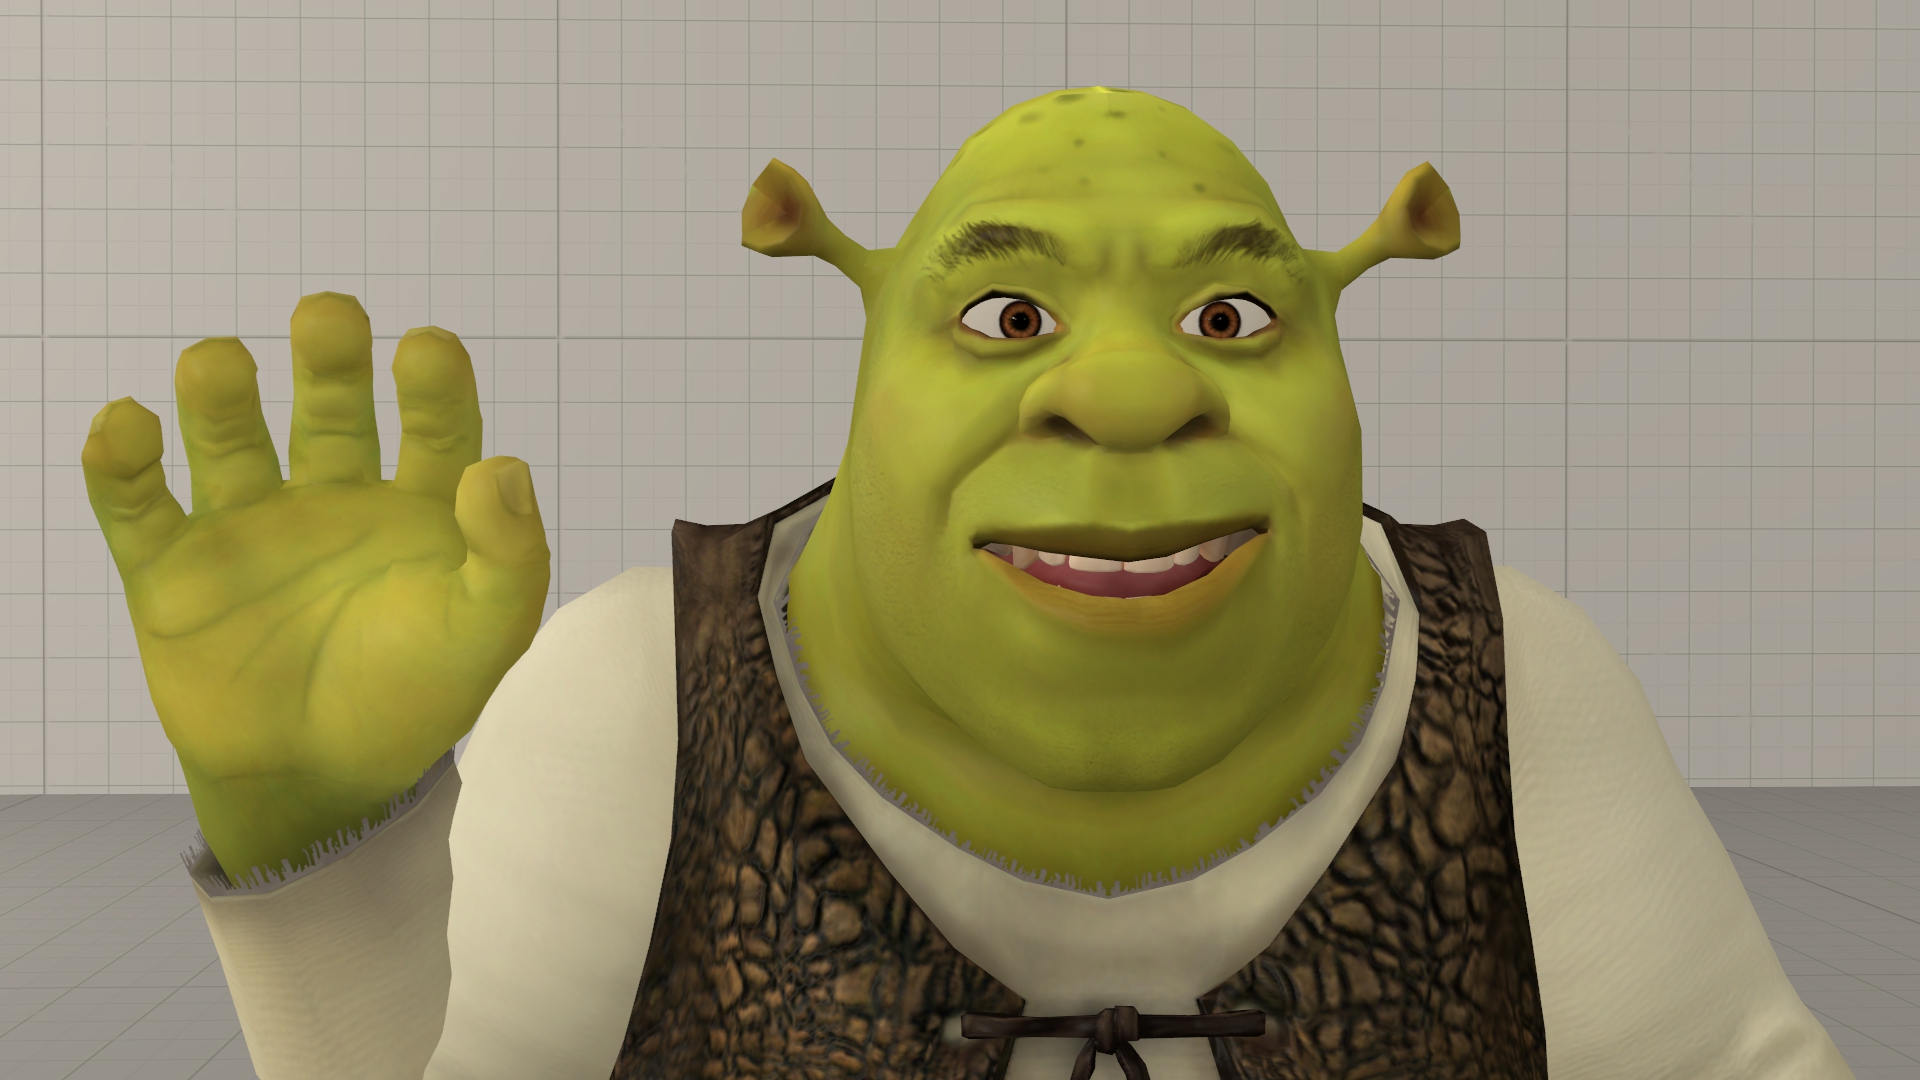 Shrek (3D) by Fortnermations on DeviantArt